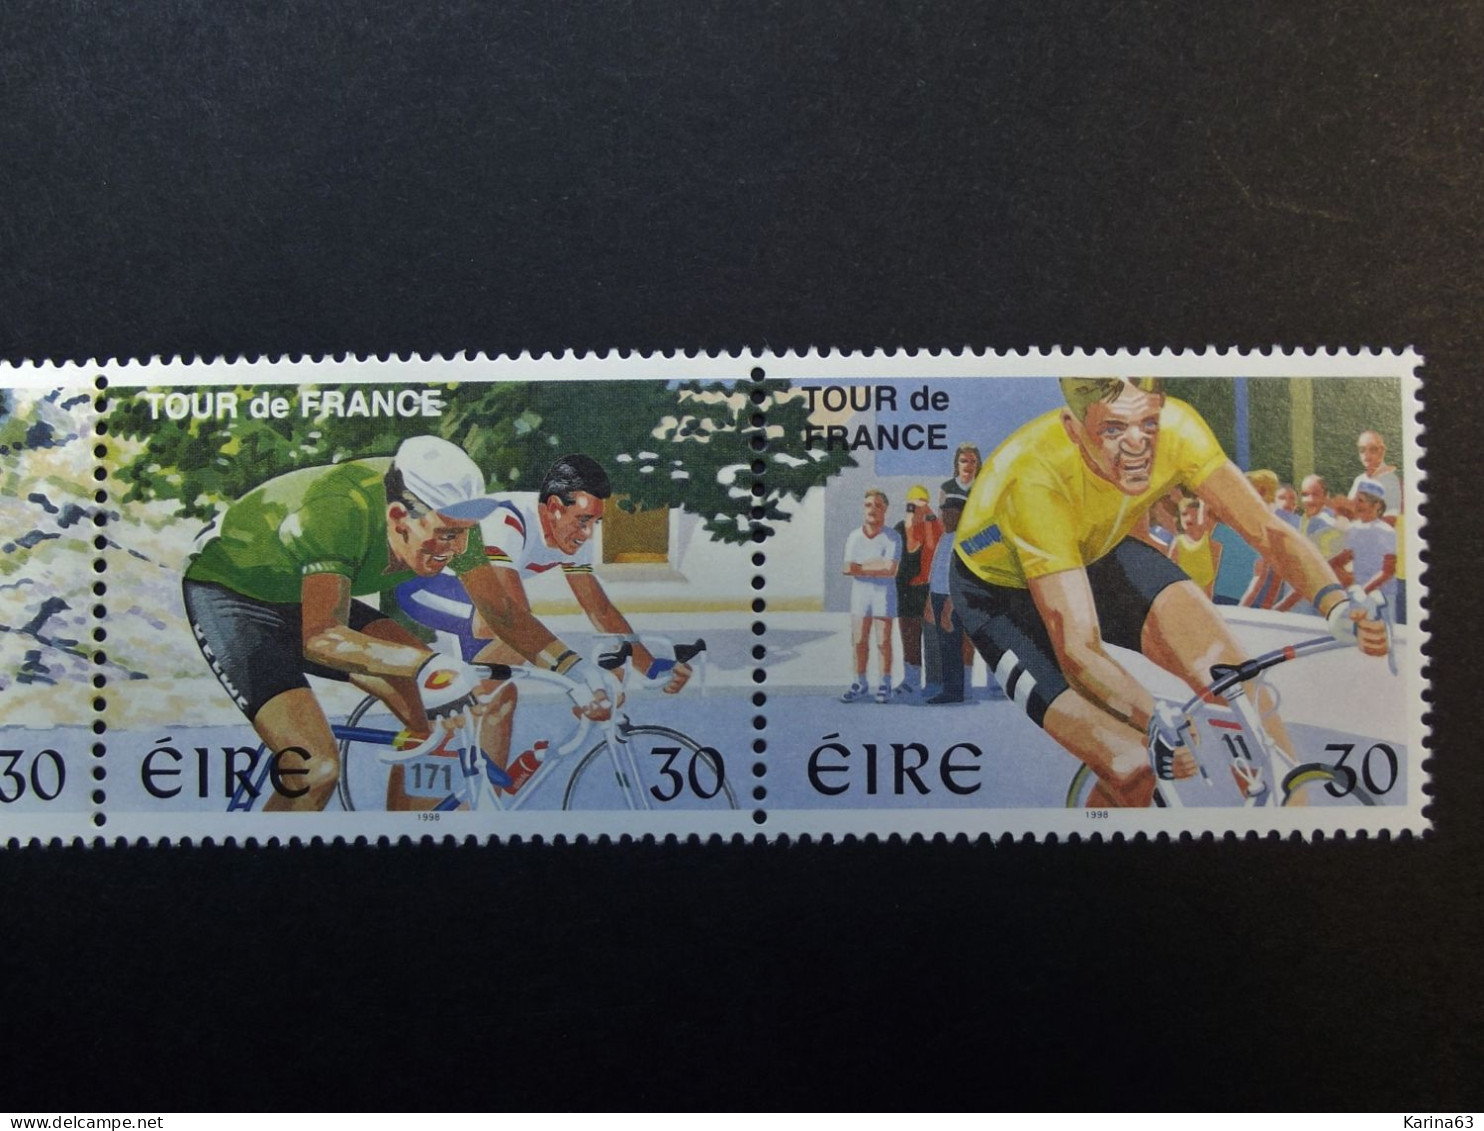 Ireland - Irelande - Eire - 1998 - Y&T N° 1085 / 1088 - (4 Val.) Tour De France In Ireland - MNH - Postfris - Neufs